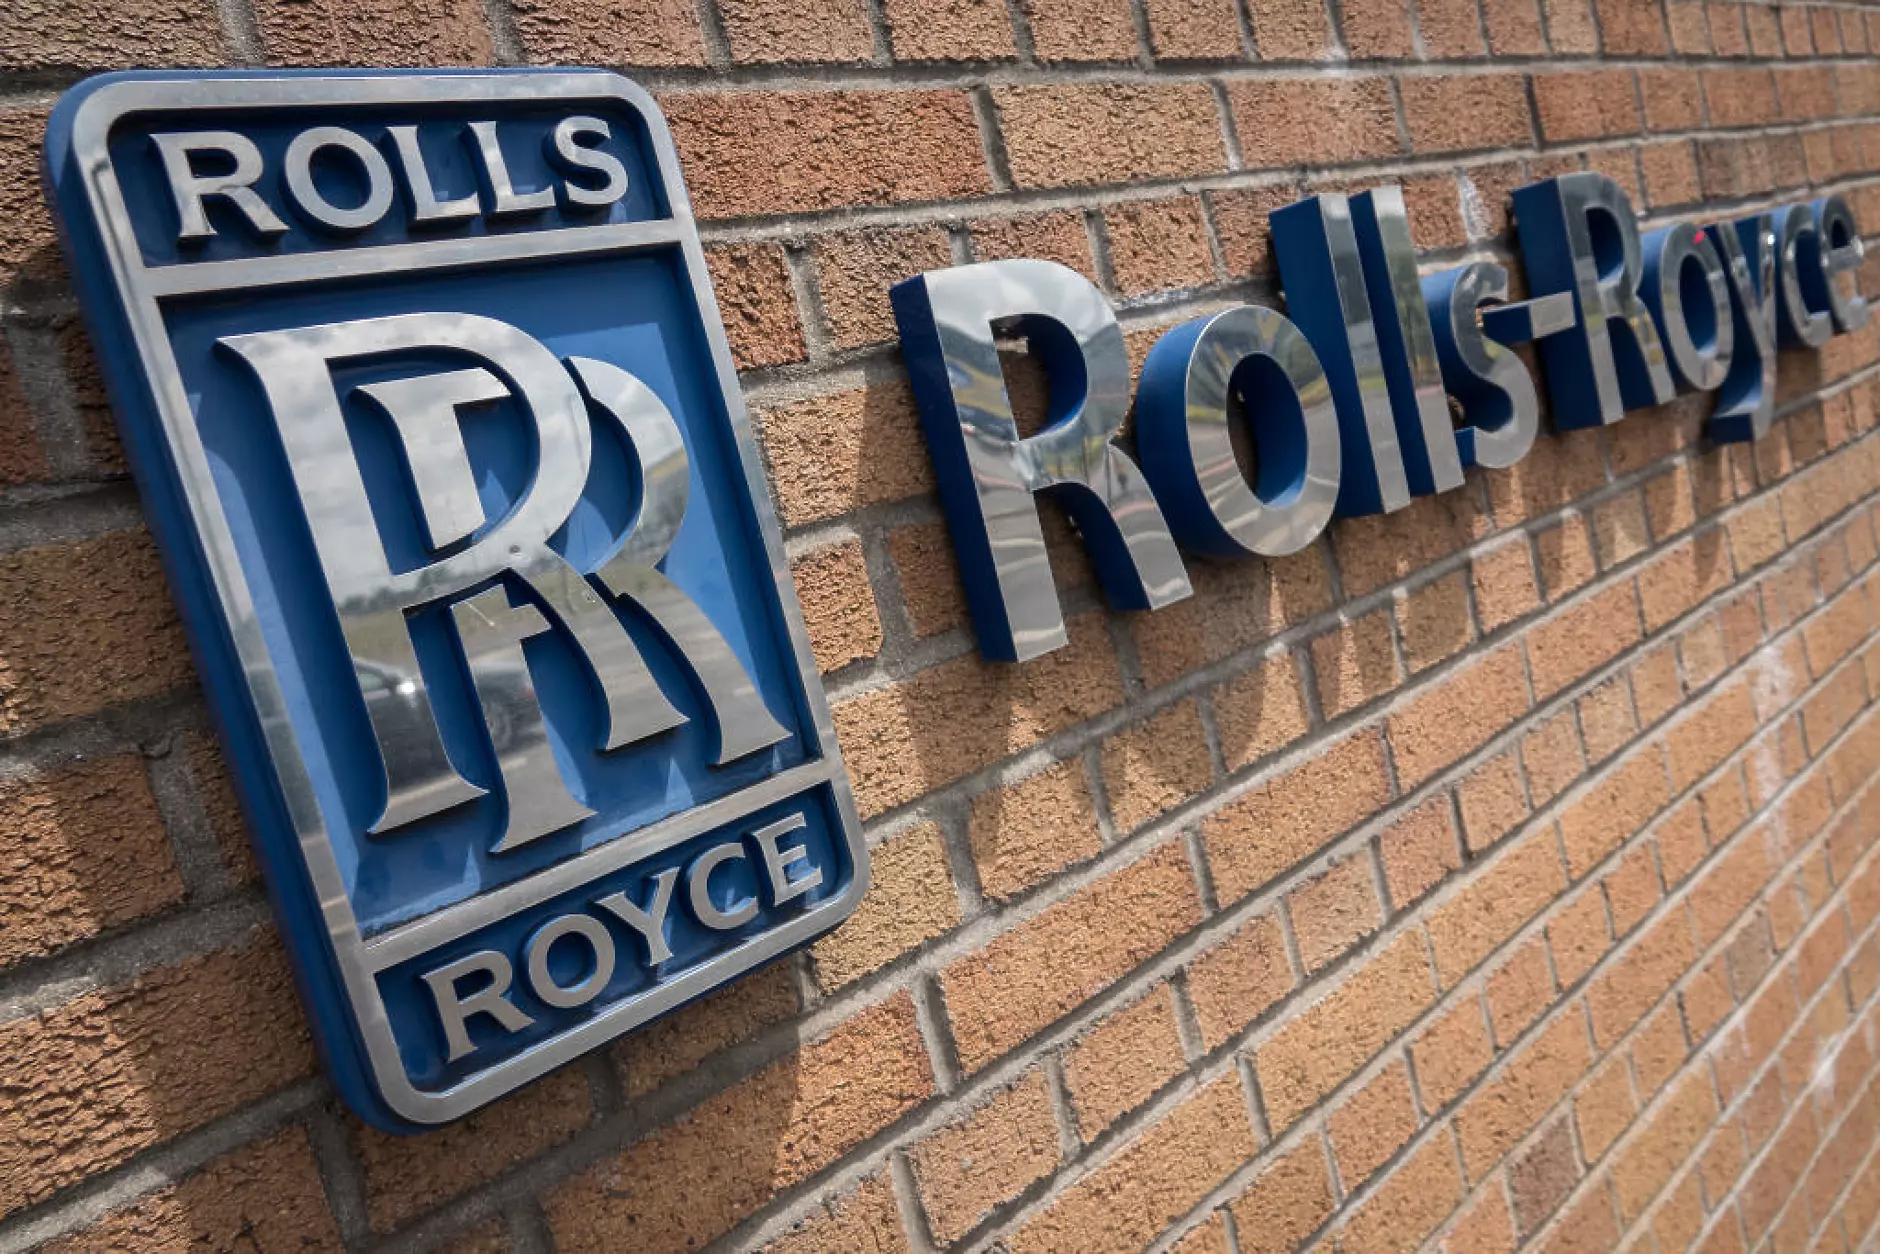 Rolls-Royce назначи за свой шеф бивш изпълнителен директор на BP